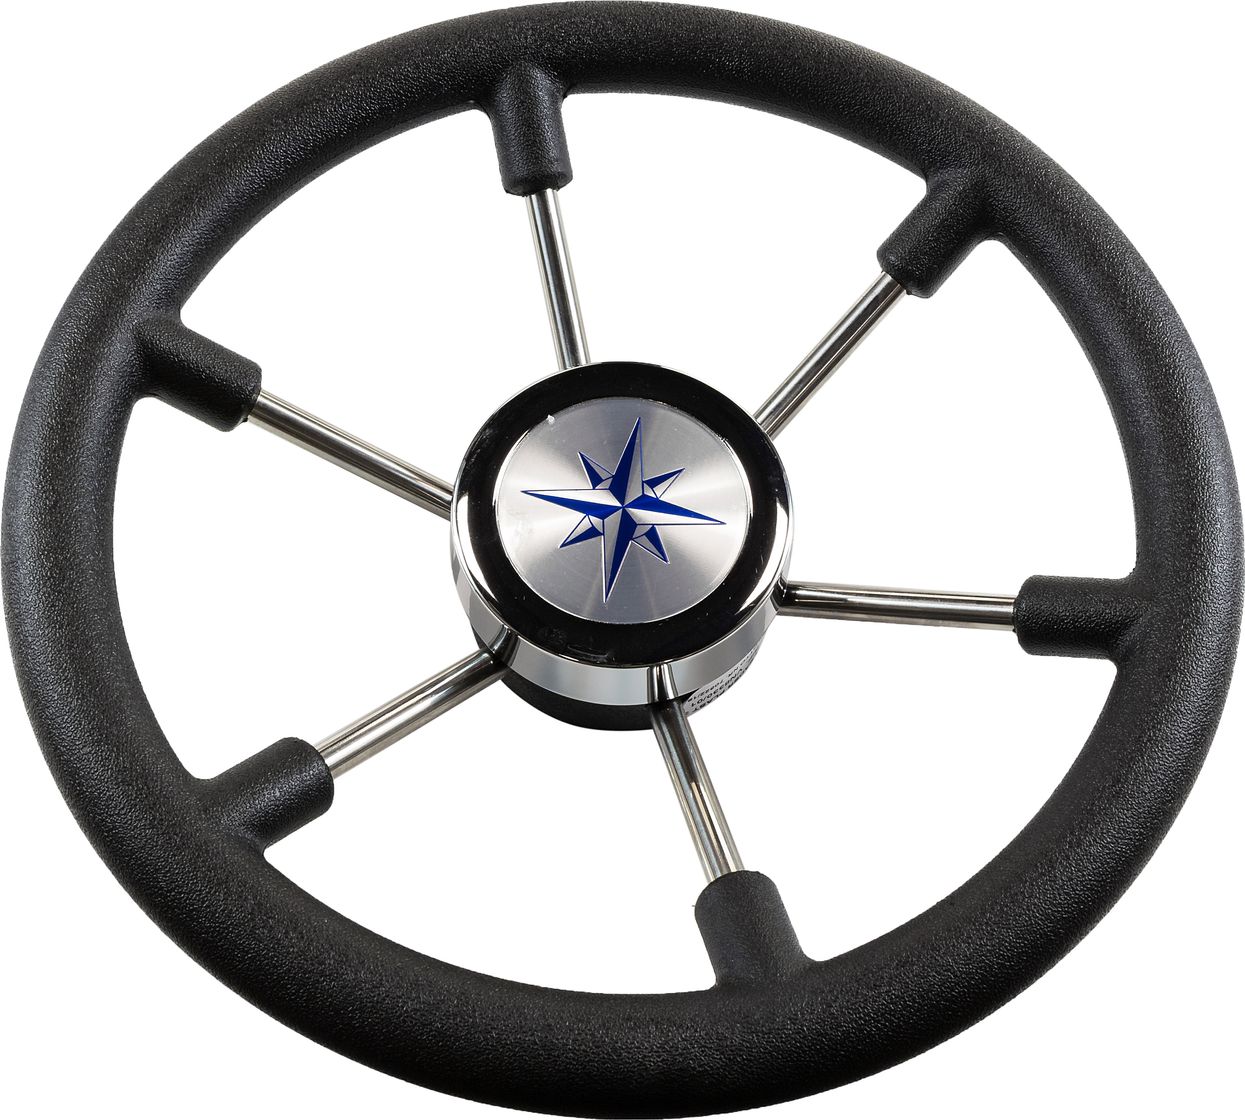 Рулевое колесо LEADER PLAST черный обод серебряные спицы д. 330 мм VN8330-01 рулевое колесо leader wood деревянный обод серебряные спицы д 360 мм vn7360 33